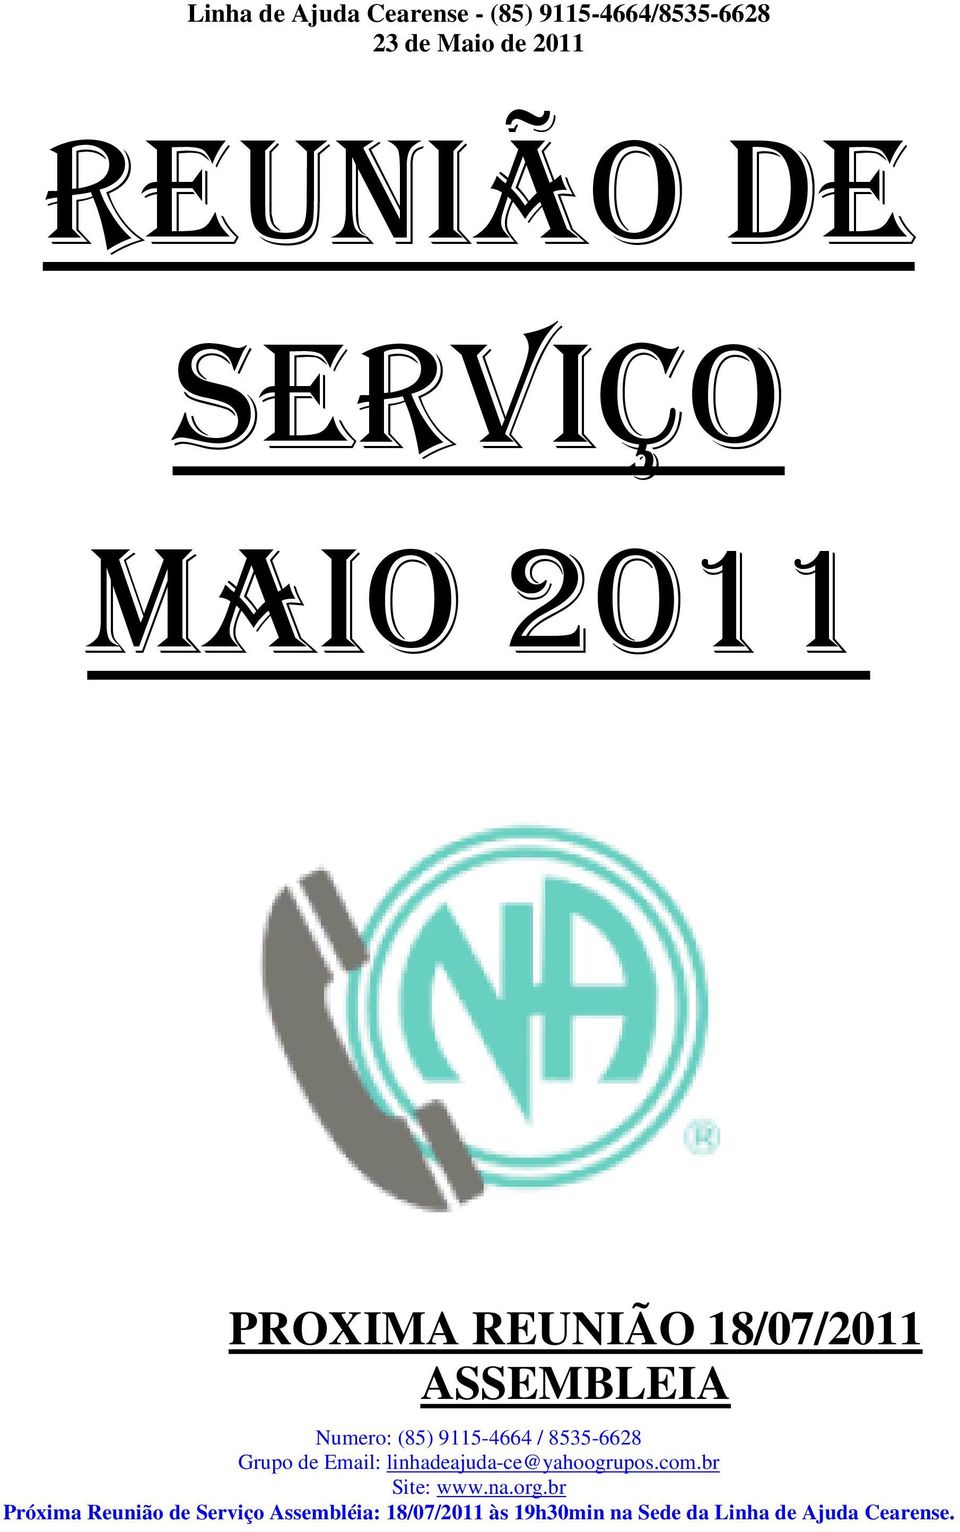 8535-6628 Grupo de Email: linhadeajuda-ce@yahoogrupos.com.br Site: www.na.org.